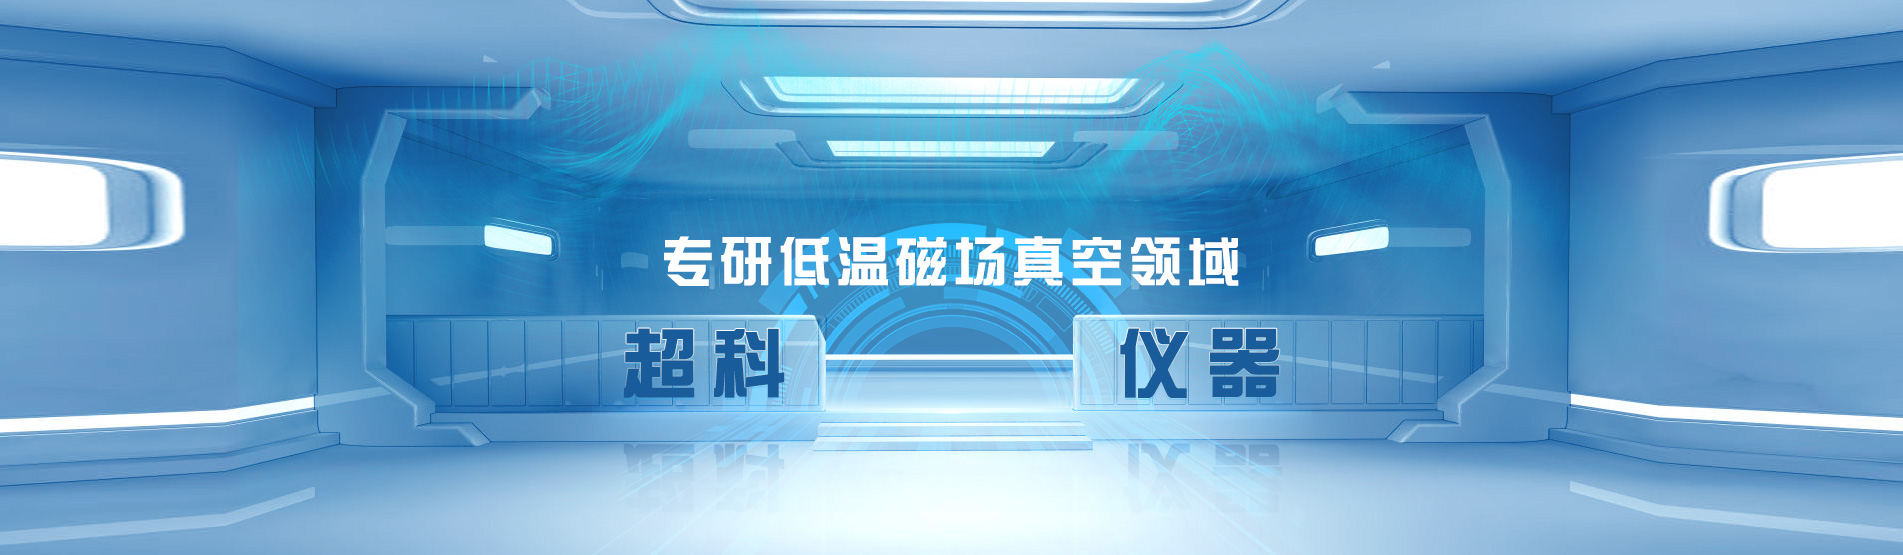 天津超科仪器仪表有限公司